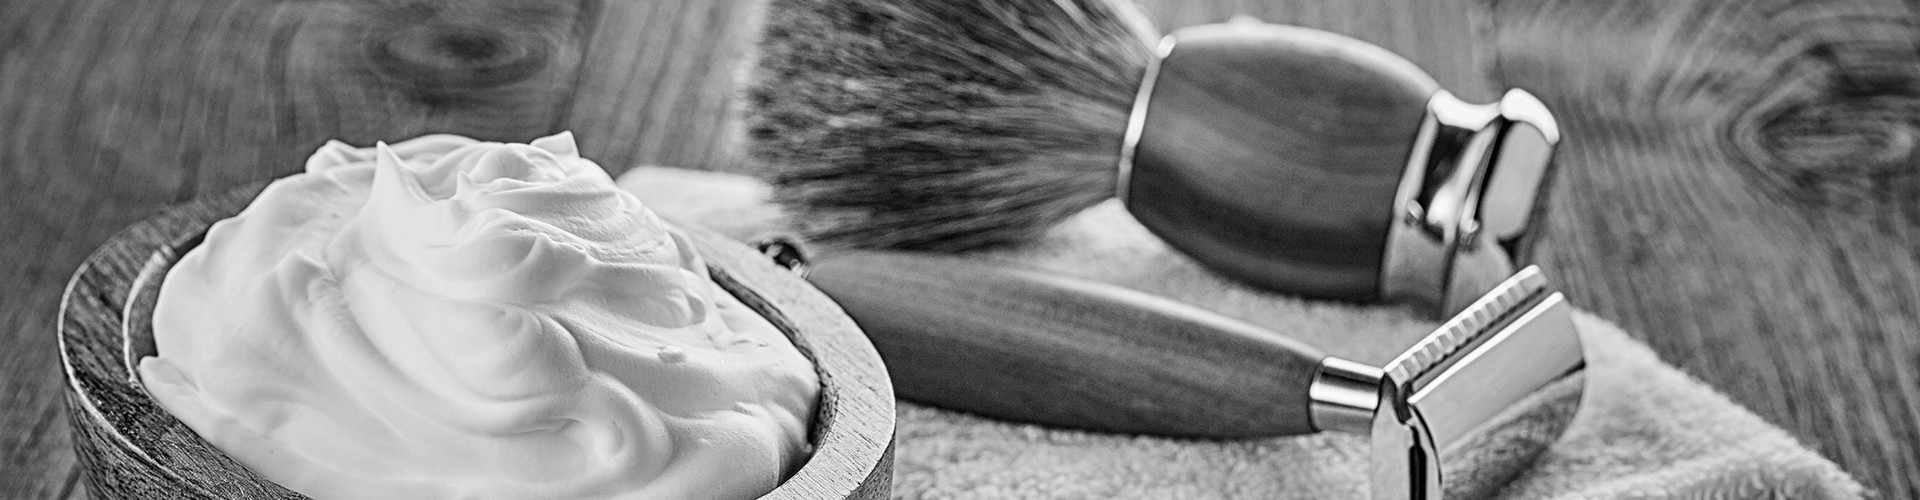 Rasoir à peigne ouvert pour les adeptes du rasage traditionnel